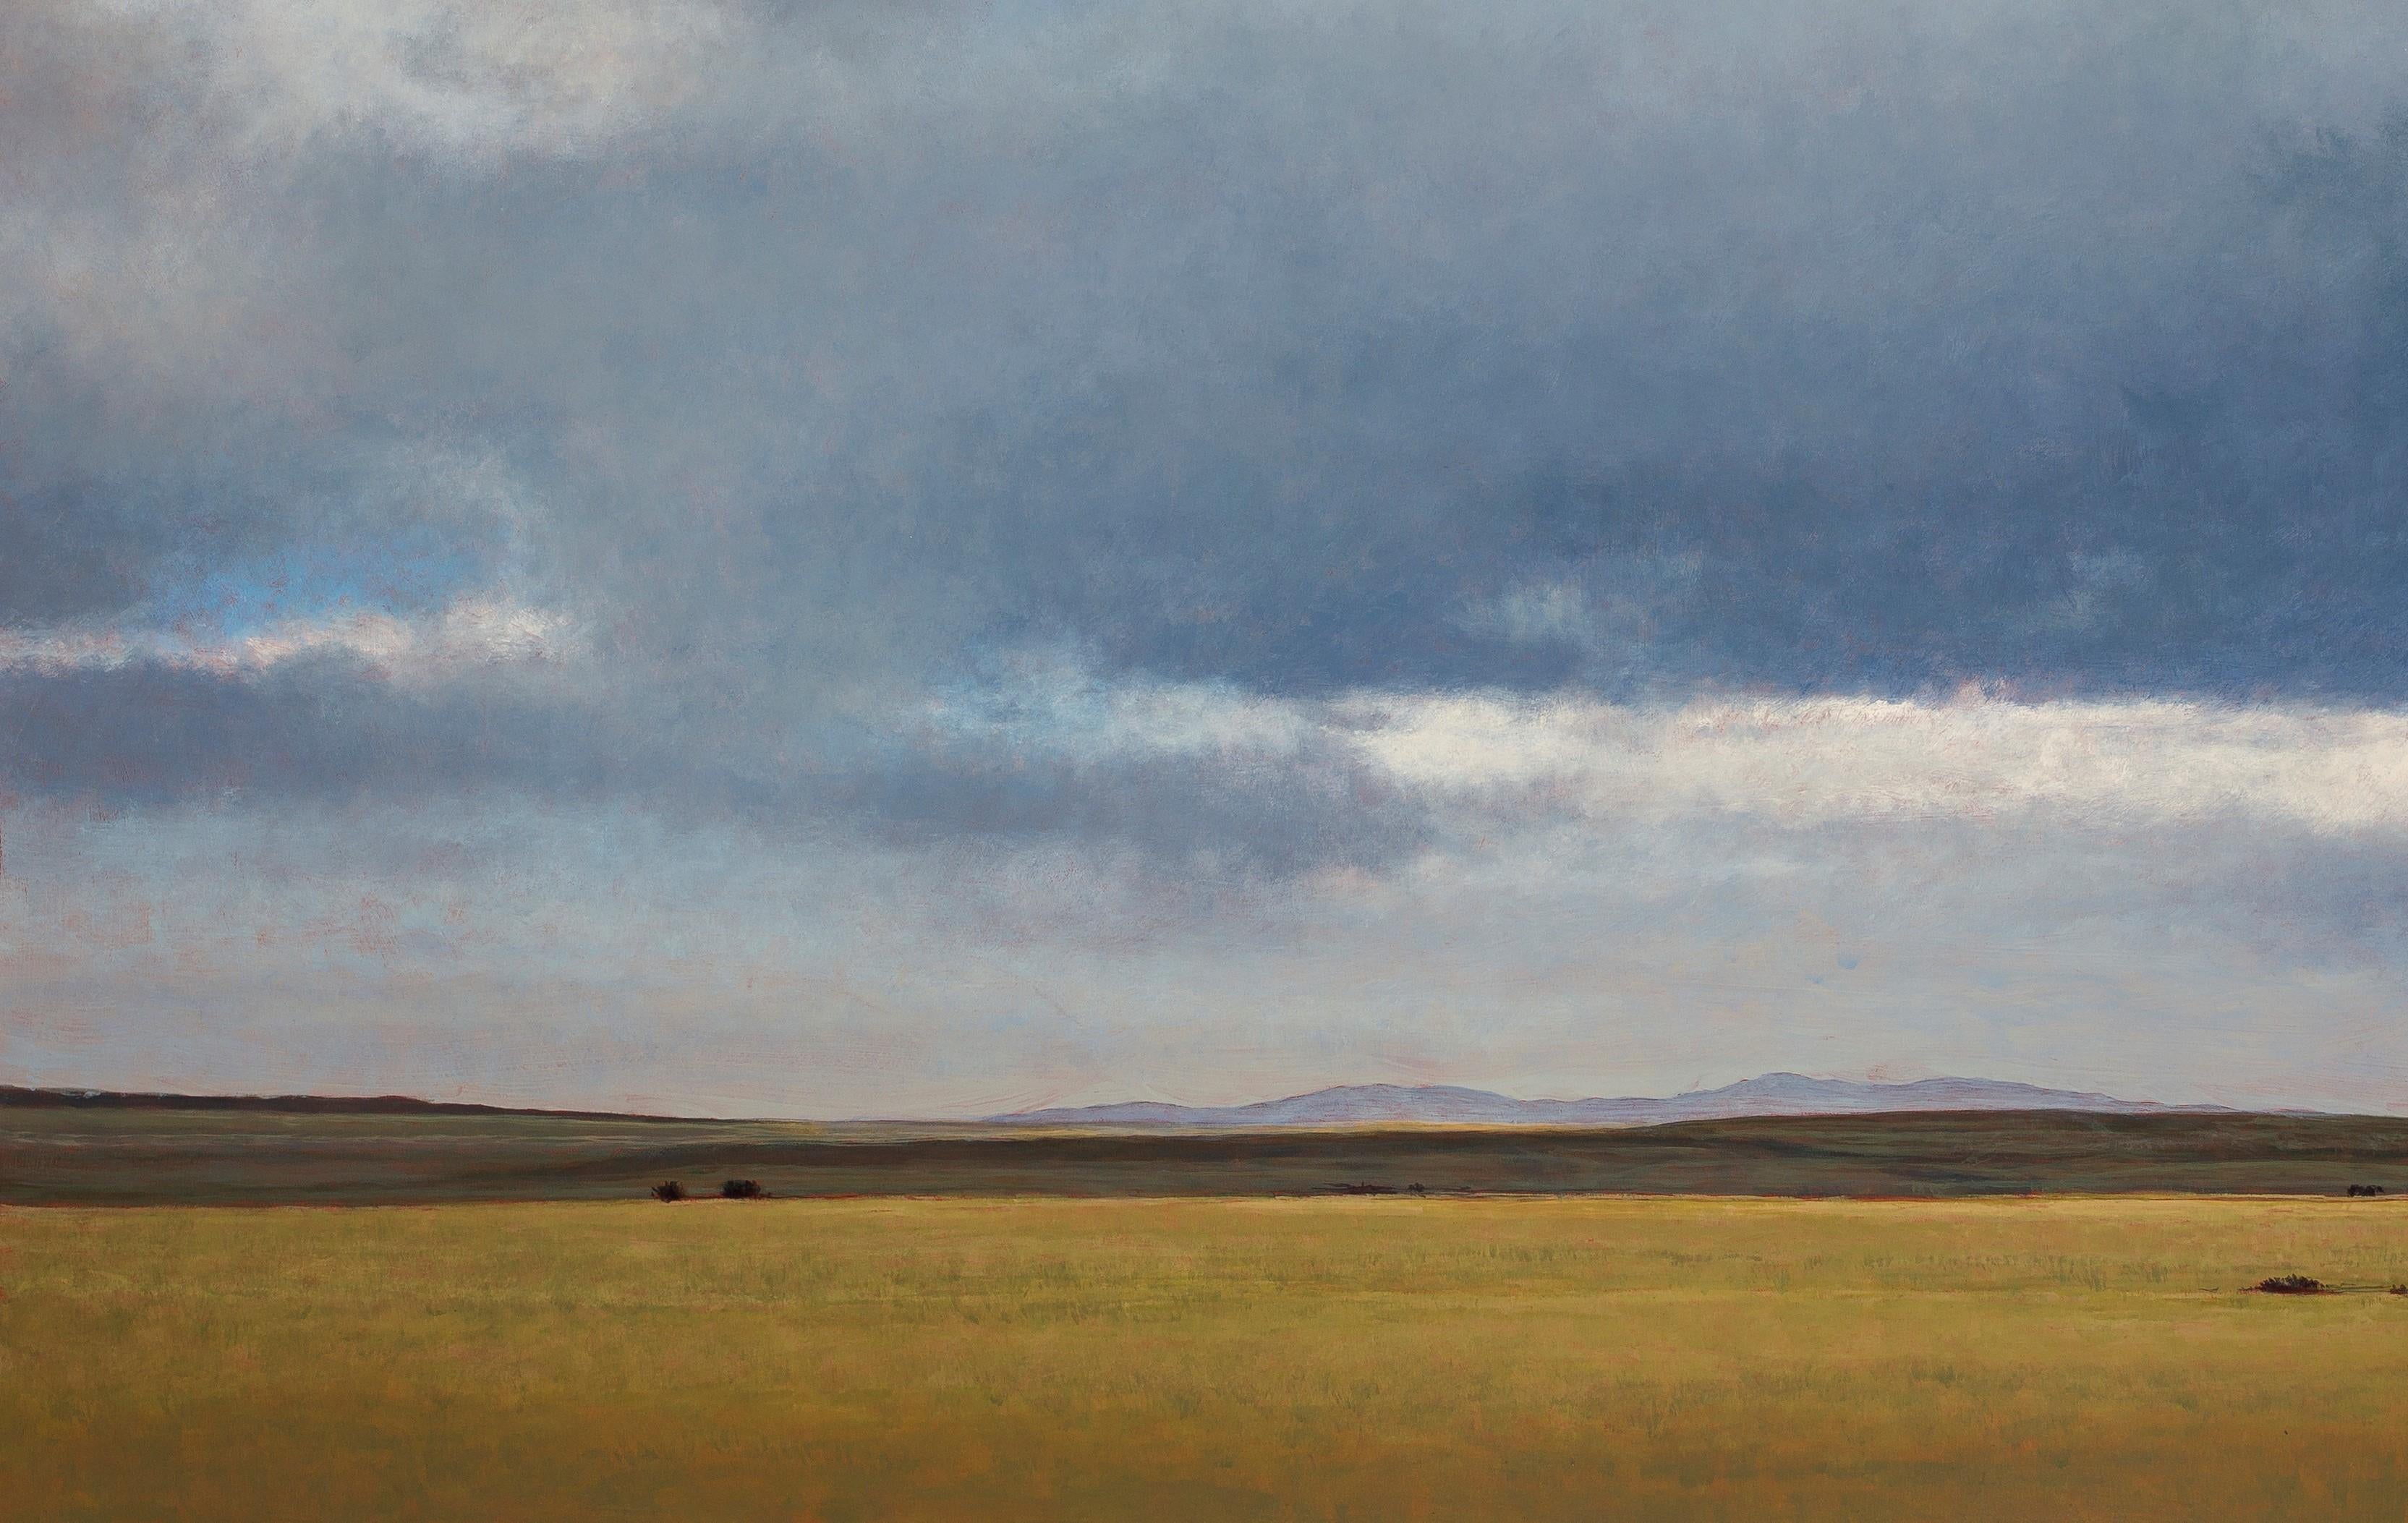 In dieser ruhigen Landschaft verwendet Jeff Aeling goldene Brauntöne in dieser weiten, offenen Ebene. Der weite saphirblaue Himmel darüber ist mit flauschigen Kumuluswolken gefüllt, die zur allgemeinen Ruhe des Werks beitragen. Das Gemälde ist in